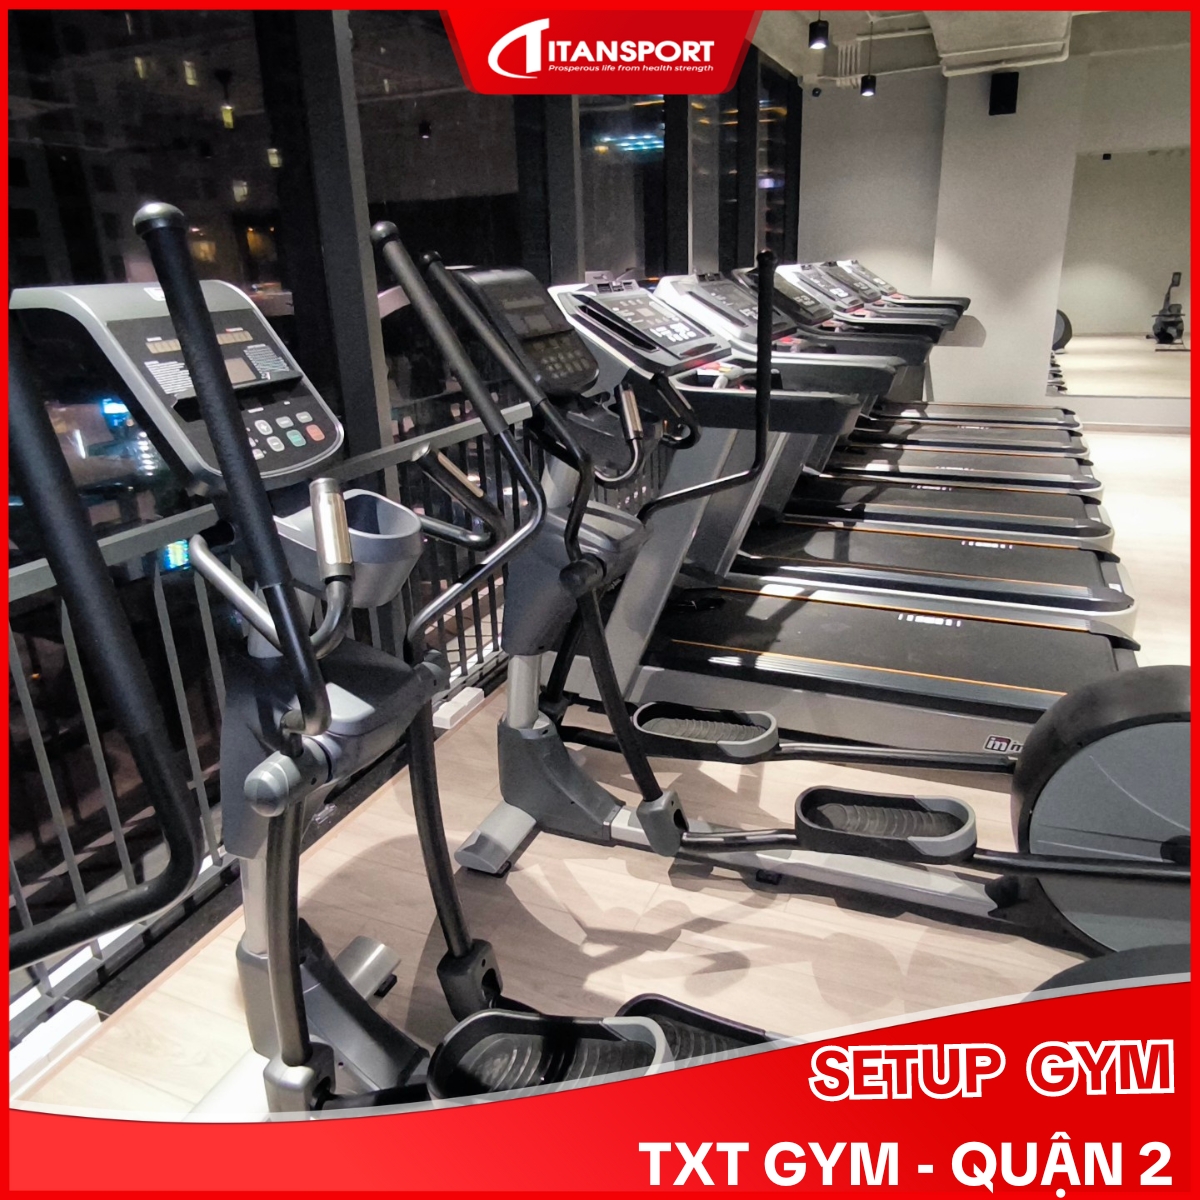 Dự án Setup phòng gym TXT GYM Quận 2đặt máy chạy bộ RT950 Impulse tại Gym Home Quận 3 (9)